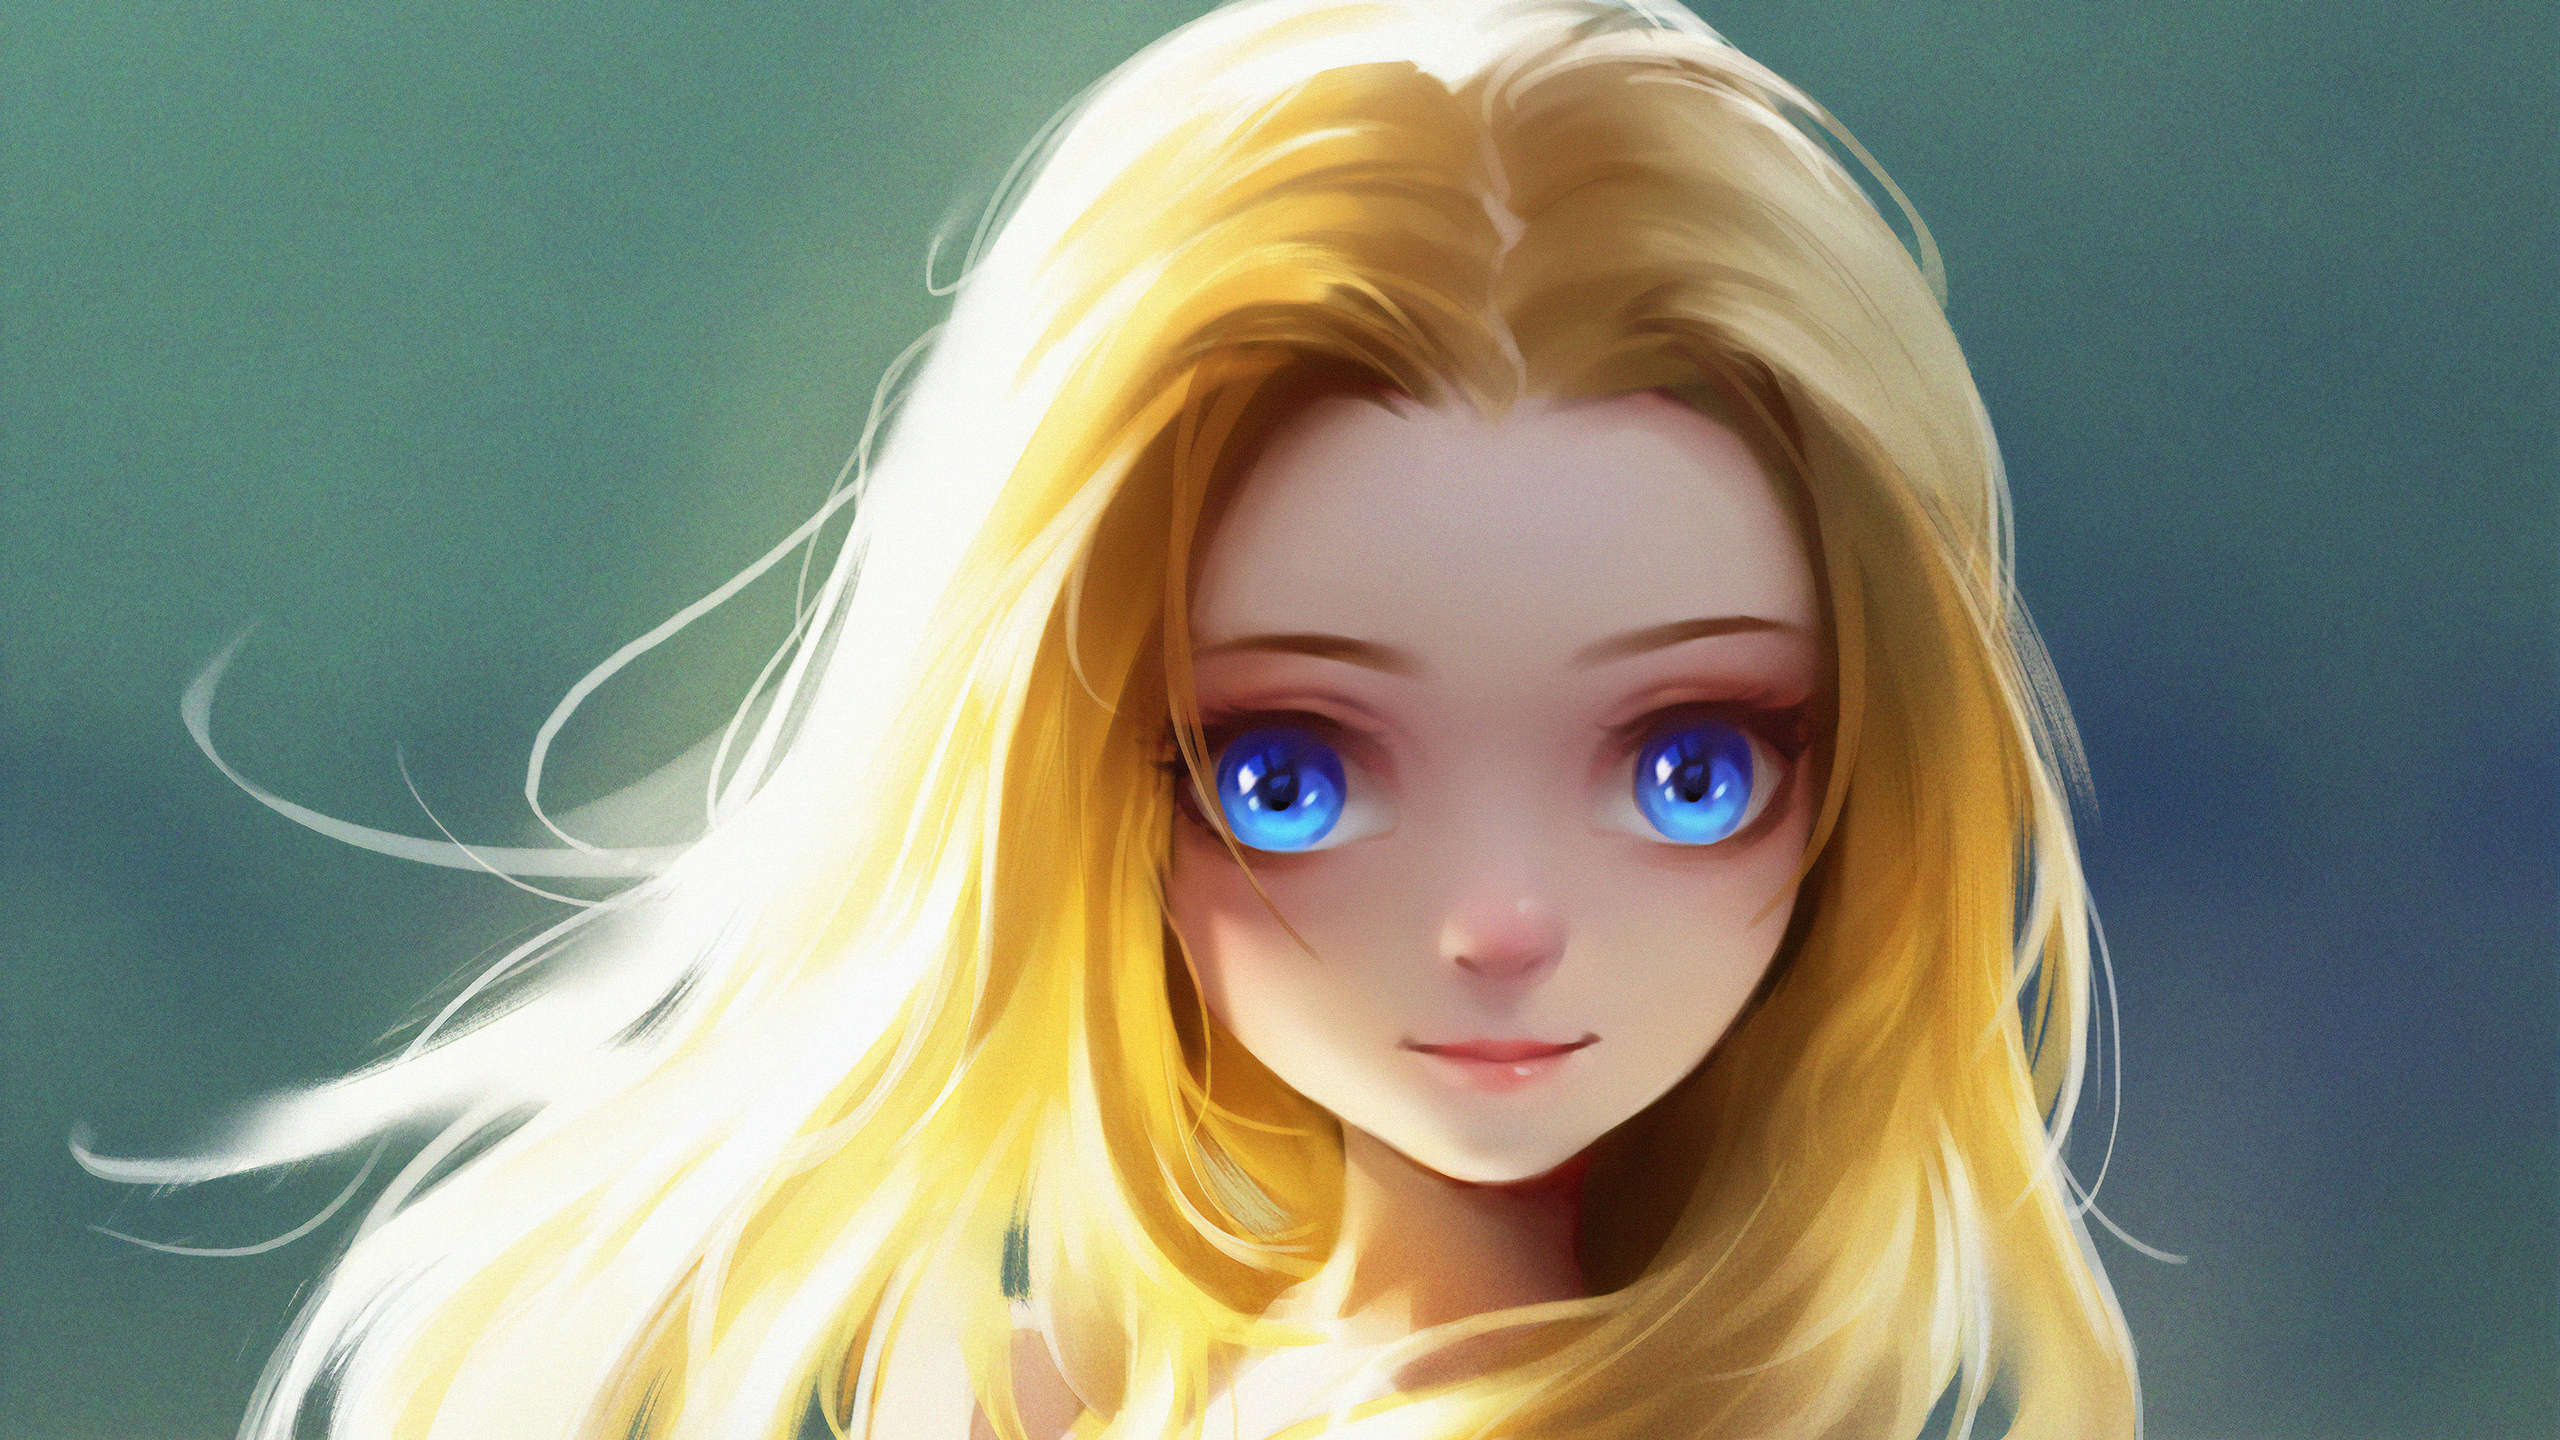 Cute Little Blonde Girl Blue Eyes Digital Art Wallpaper In 2560x1440 Resolution